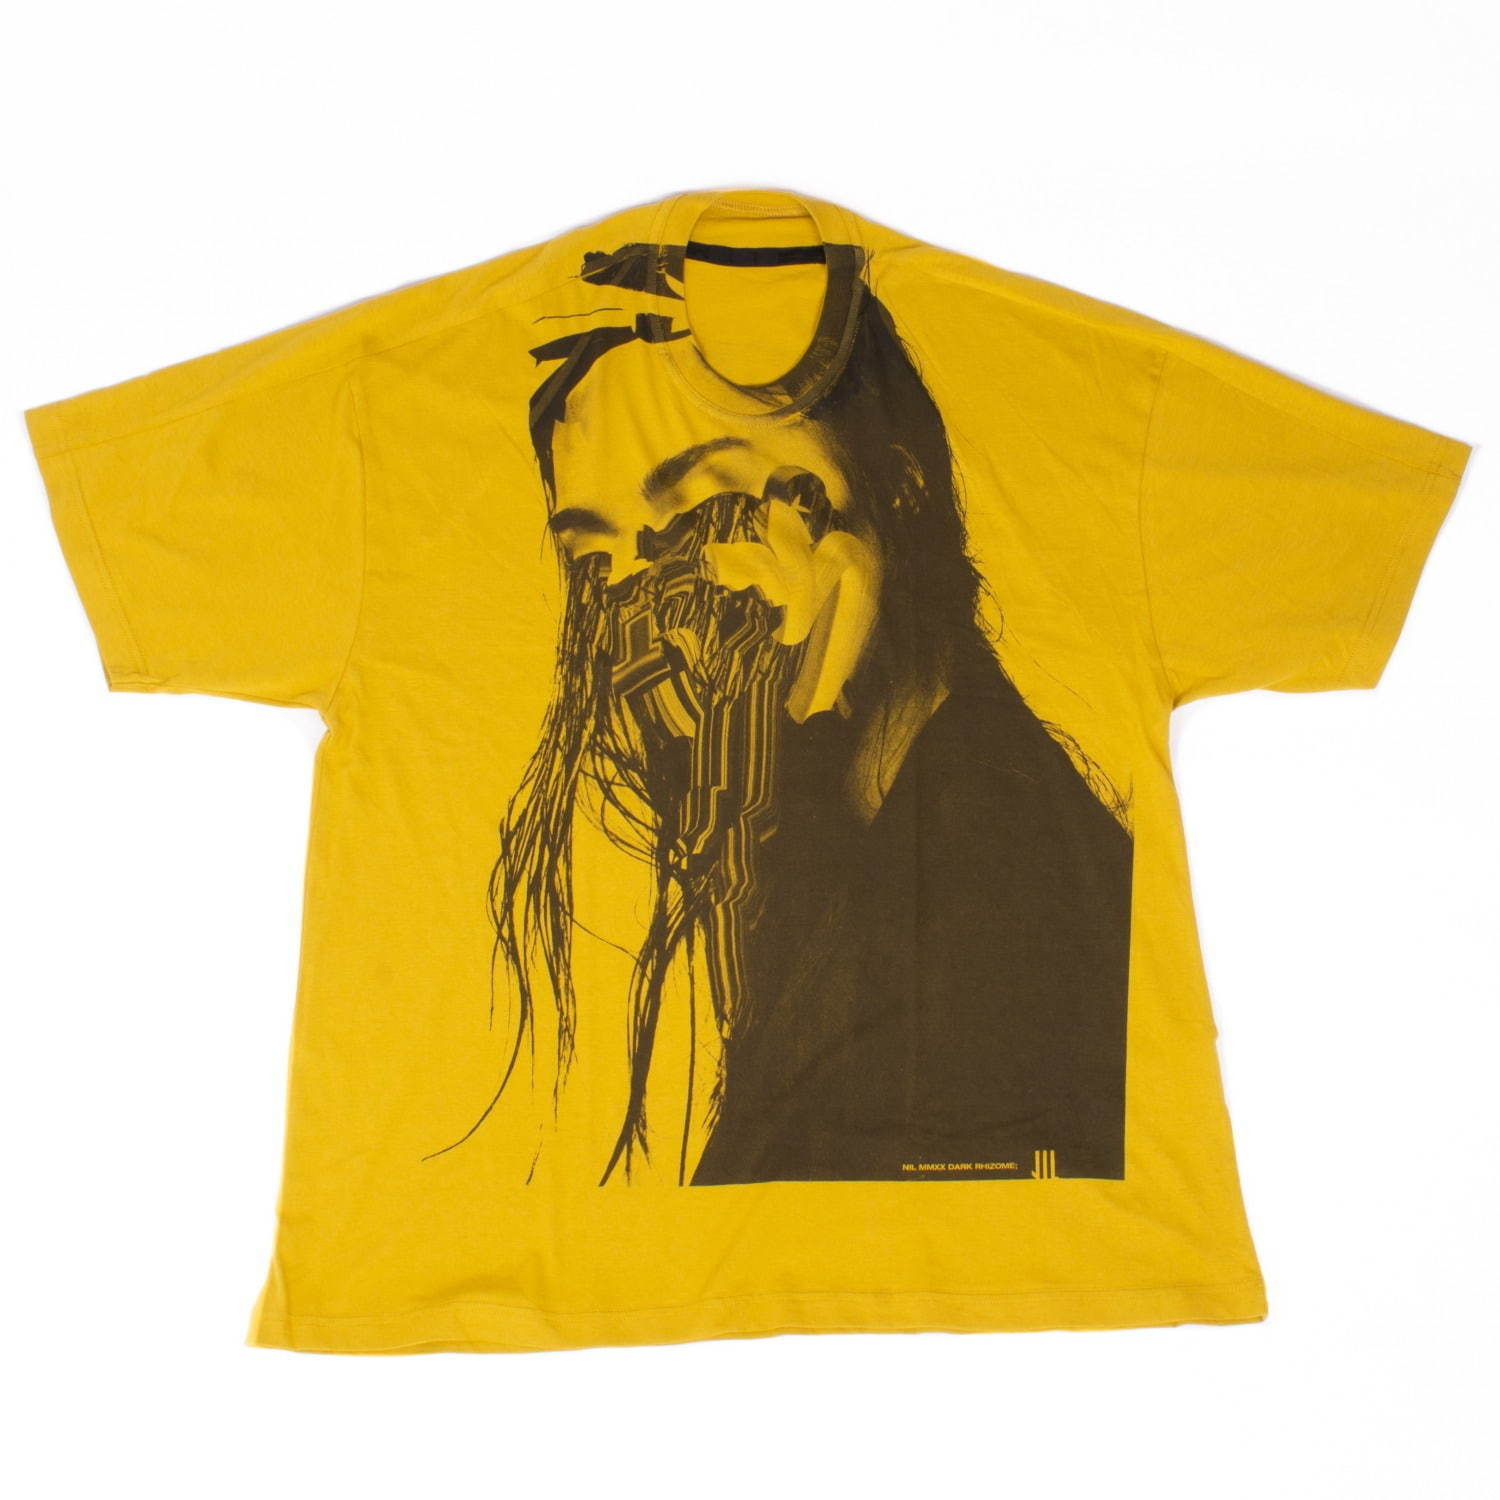 ニルズ×ジェシー・ドラクスラーのTシャツ、コラージュアートのモノクロプリント コピー